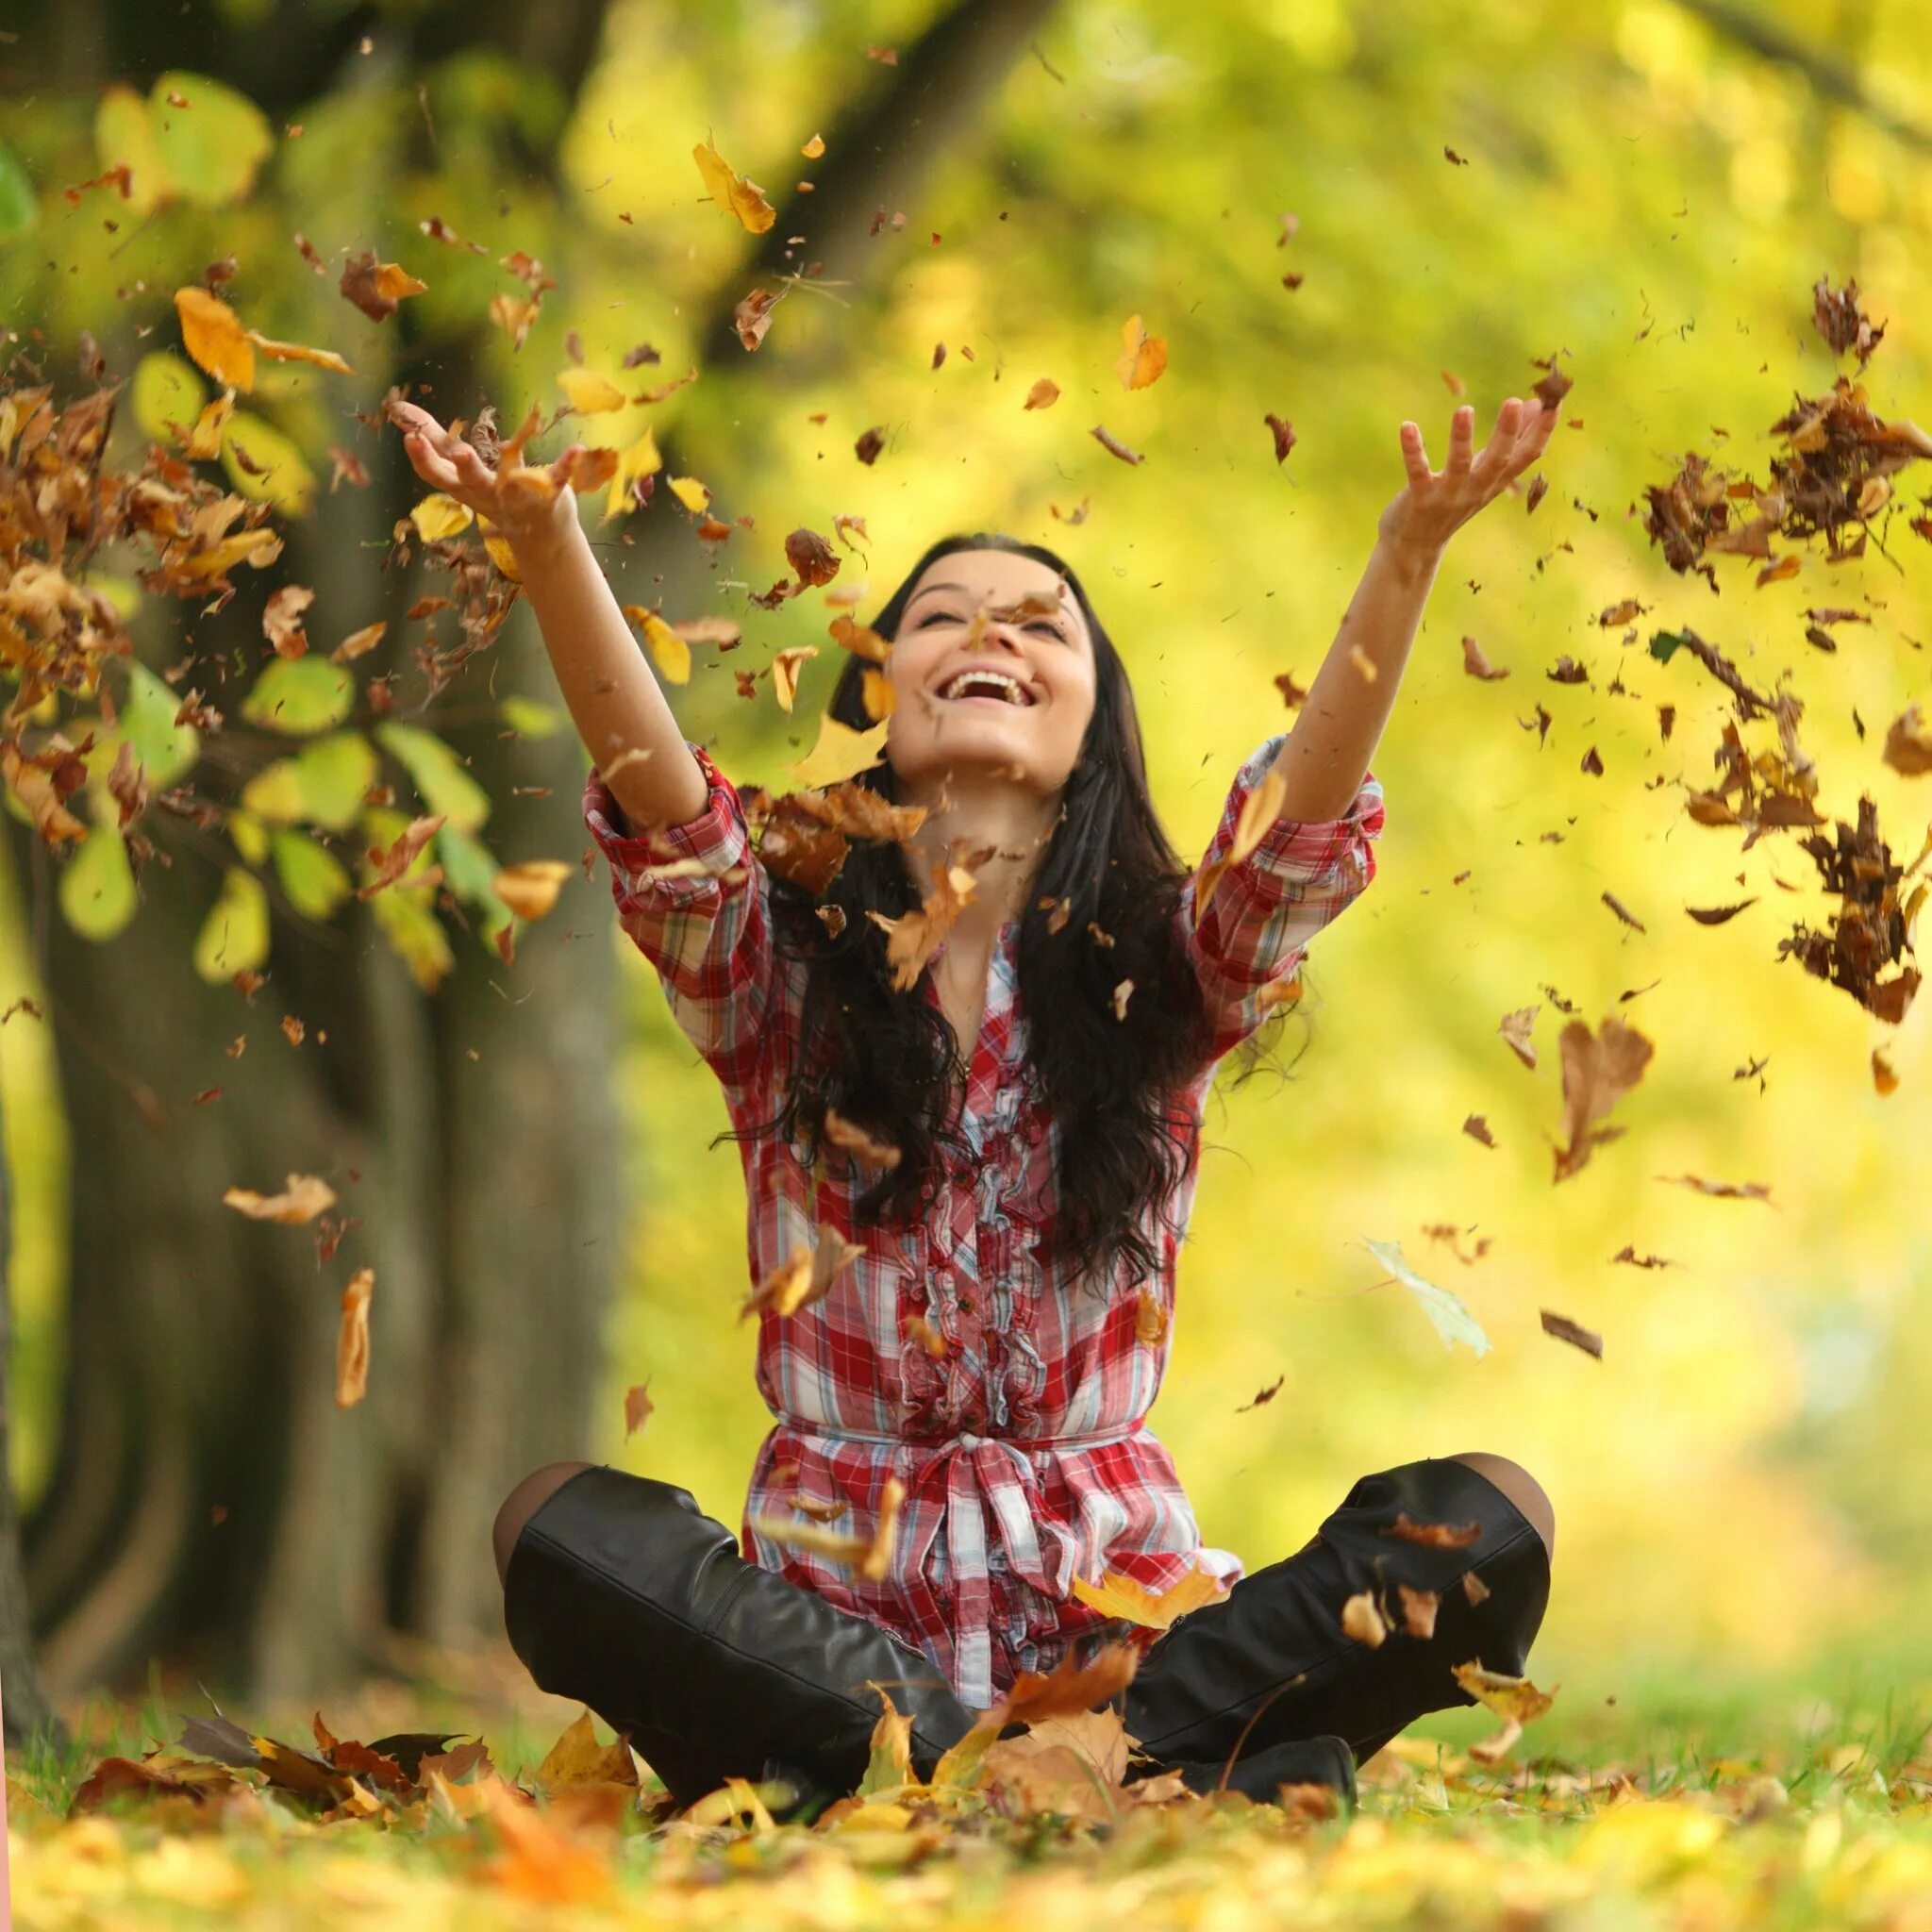 Есть на свете такие счастливые лица глядеть. Осень радость. Девушка радуется. Осень люди. Осень счастье.